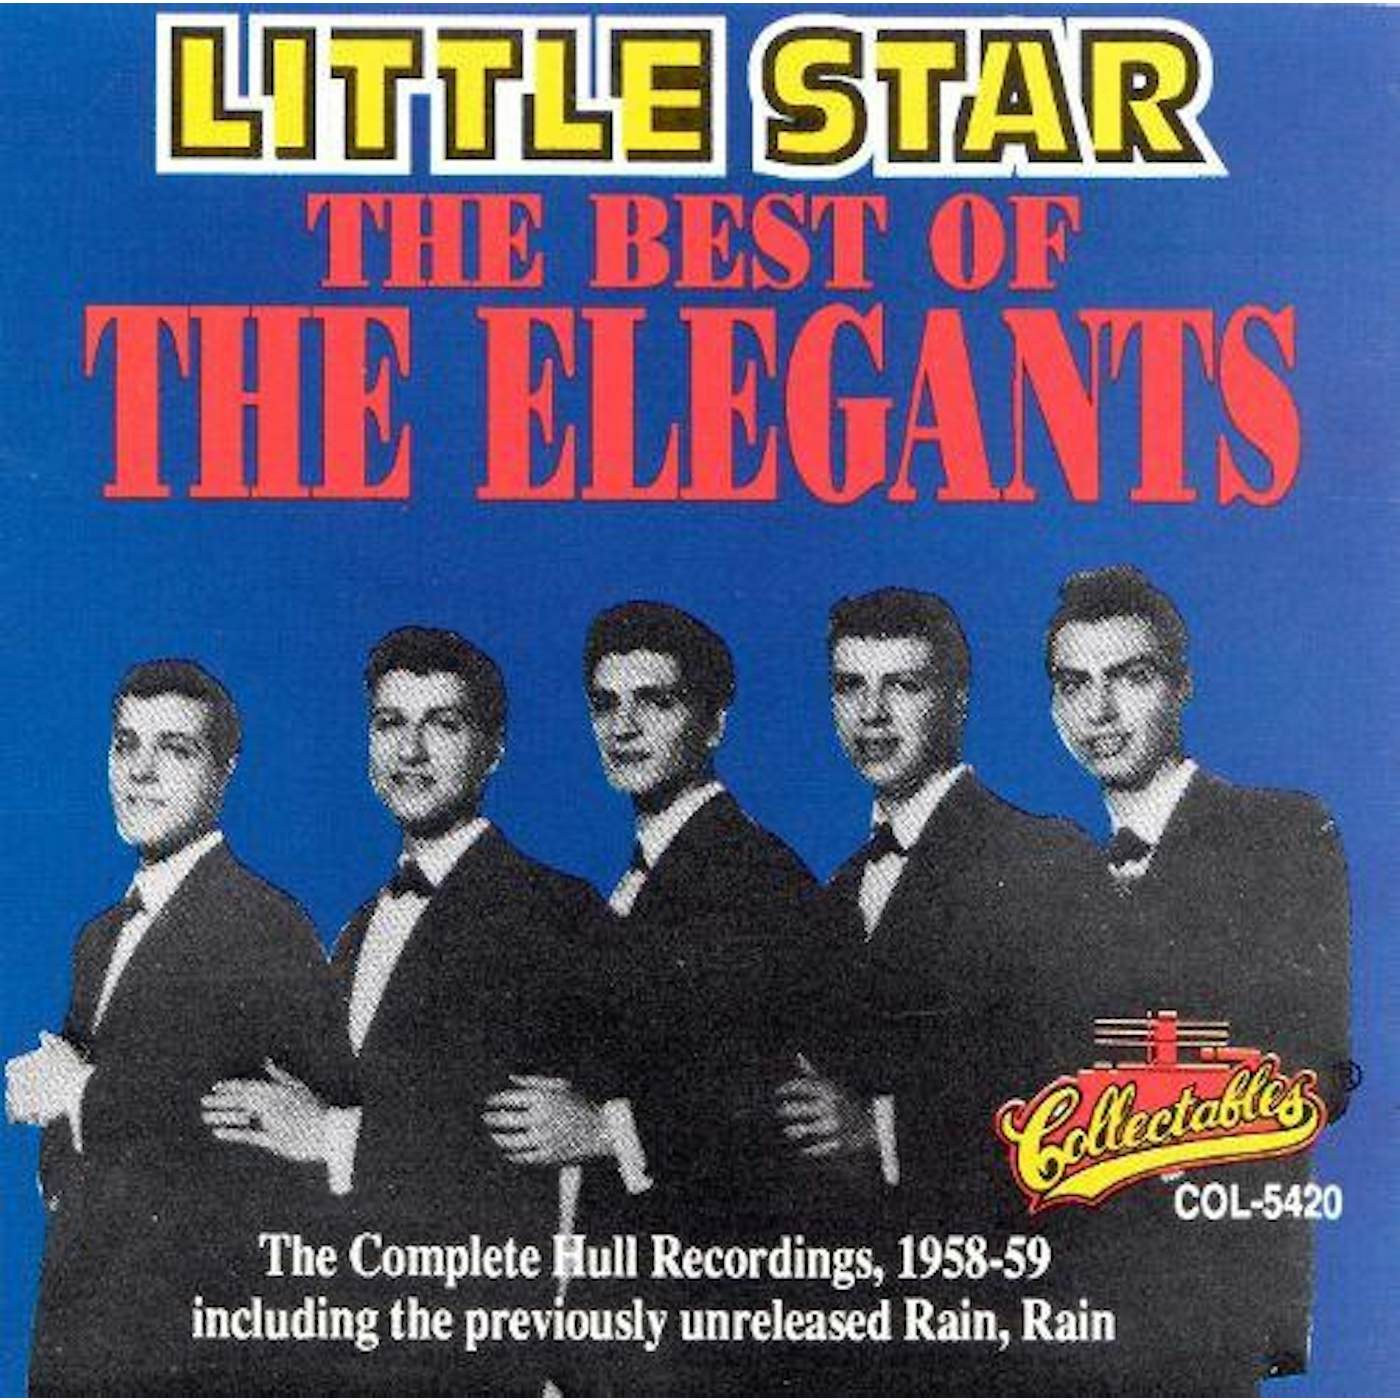 BEST OF THE ELEGANTS - LITTLE STAR CD